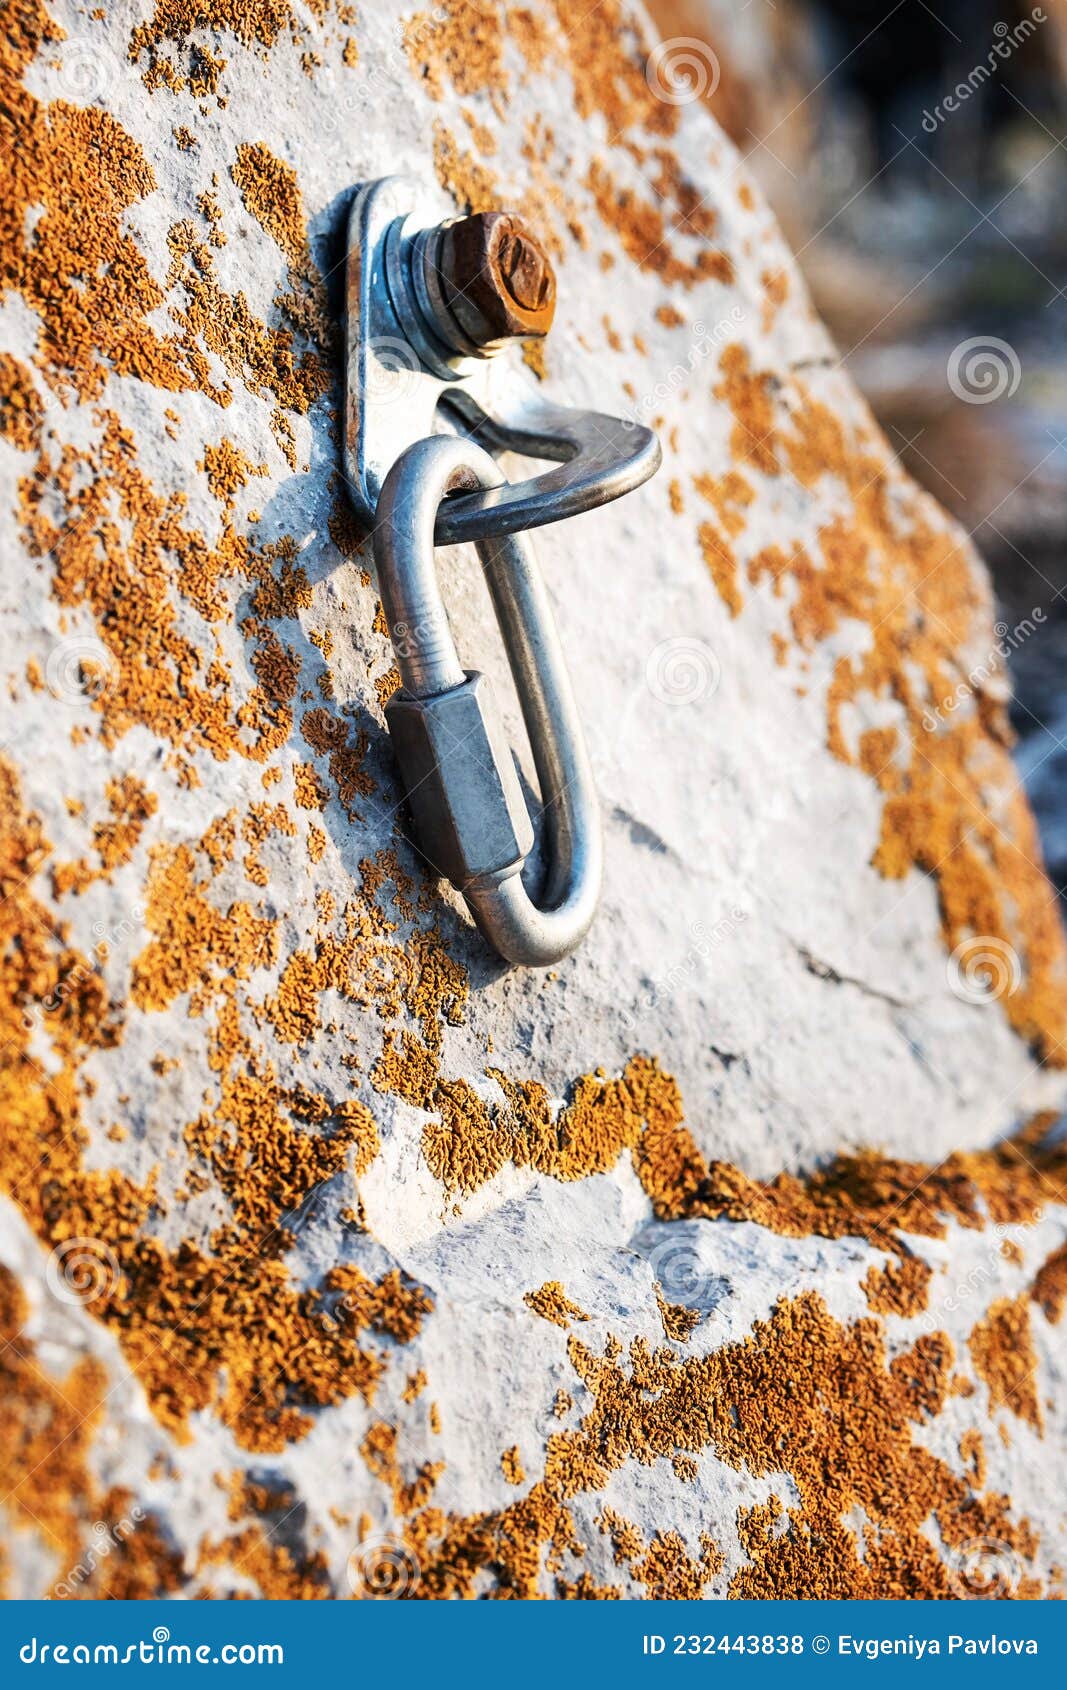 ÃÂ¡limbing carabiner hook and trigger device in stone. carabiner for mountaineering on rocky background.